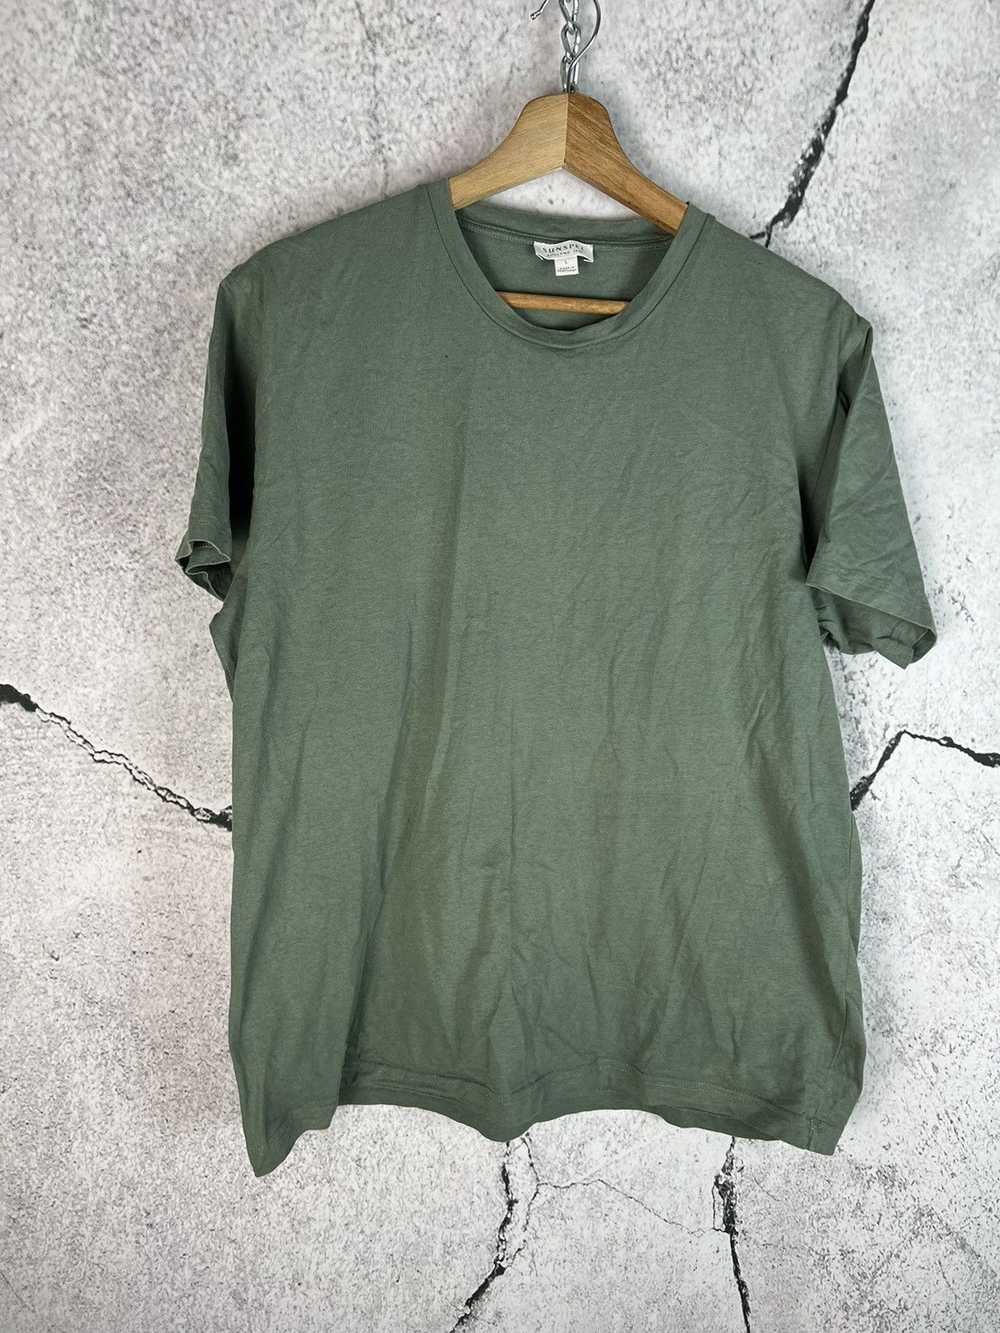 Sunspel Sunspel England Cotton T-Shirt Tee - Size… - image 1